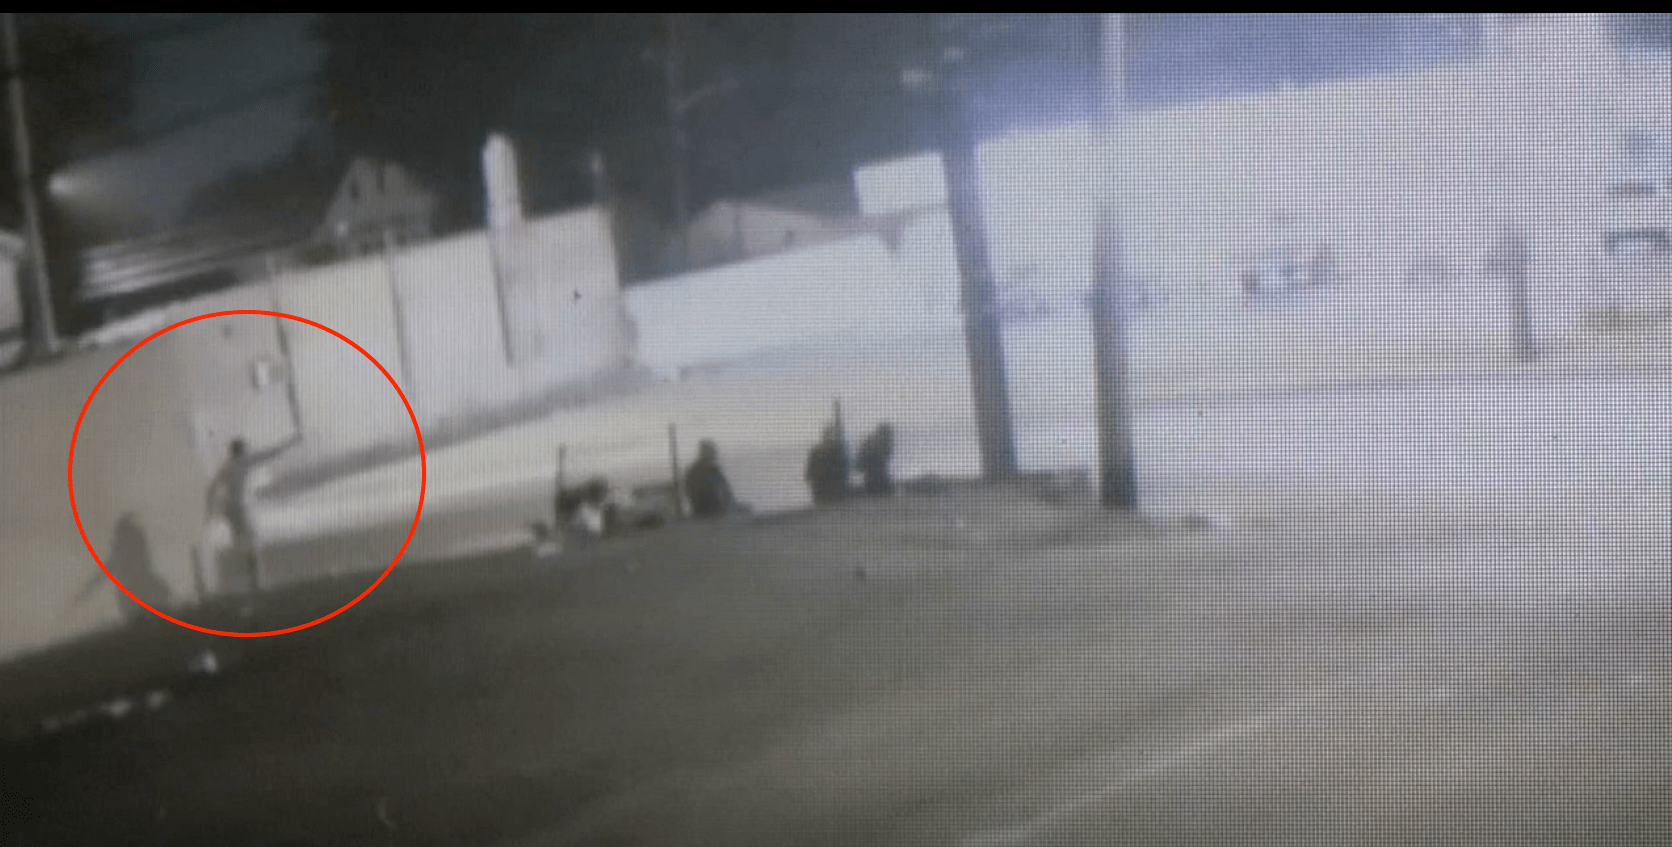 El incidente quedó grabado por una cámara de seguridad. (Foto captura de pantalla video/10tv.com).